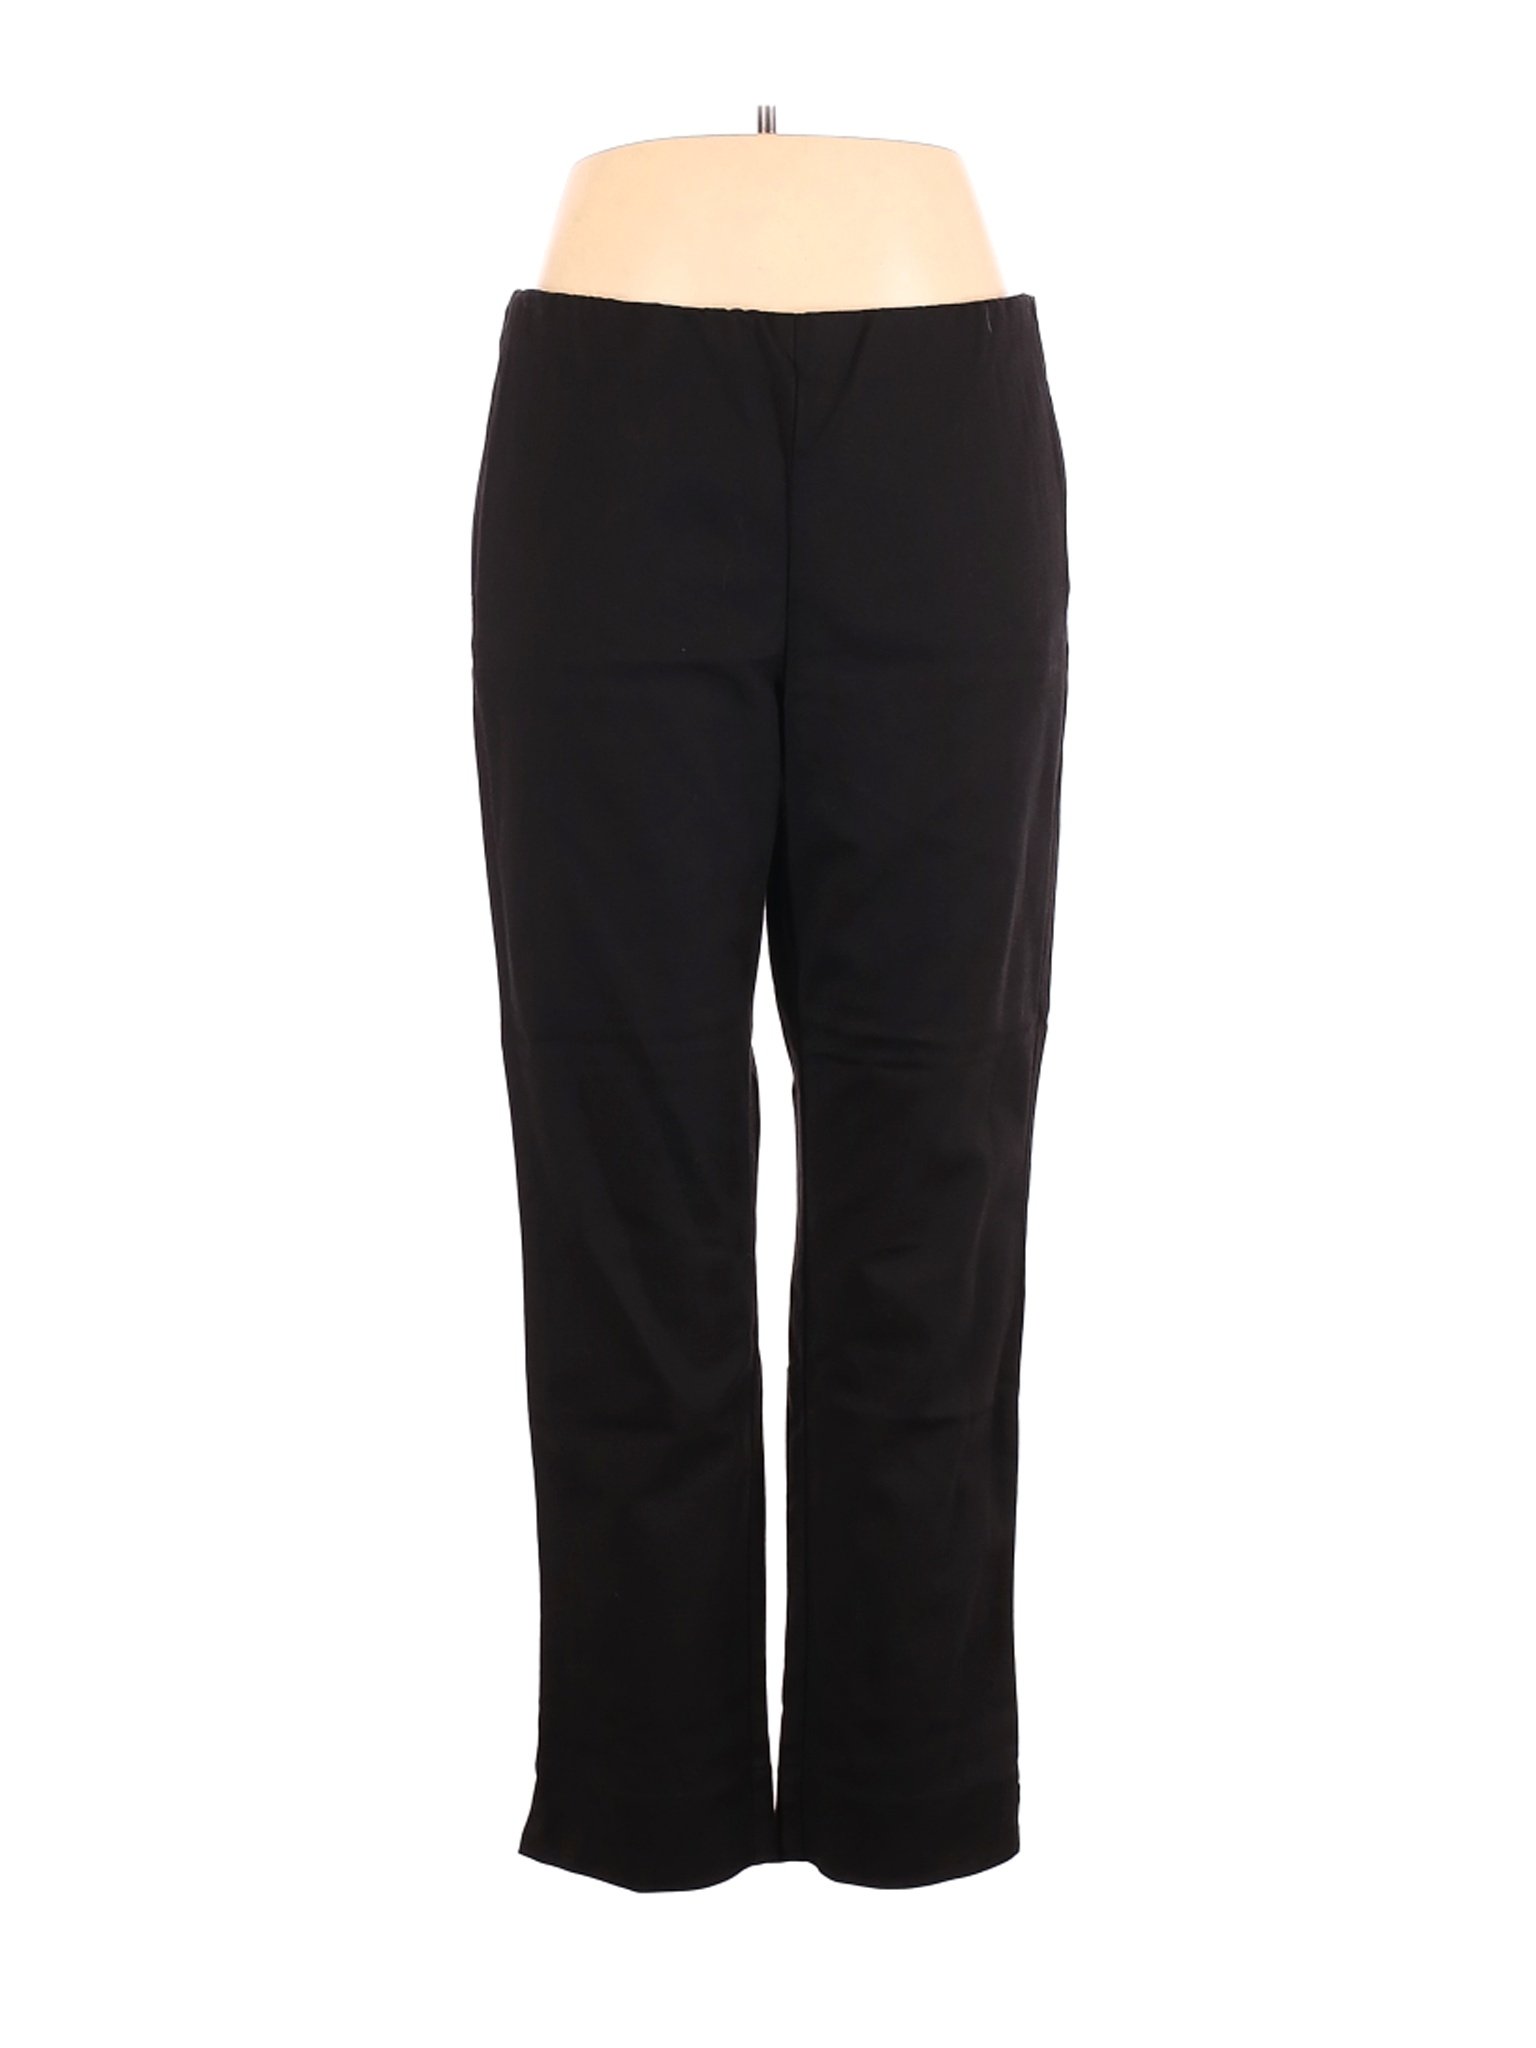 J.Jill Women Black Casual Pants 16 | eBay